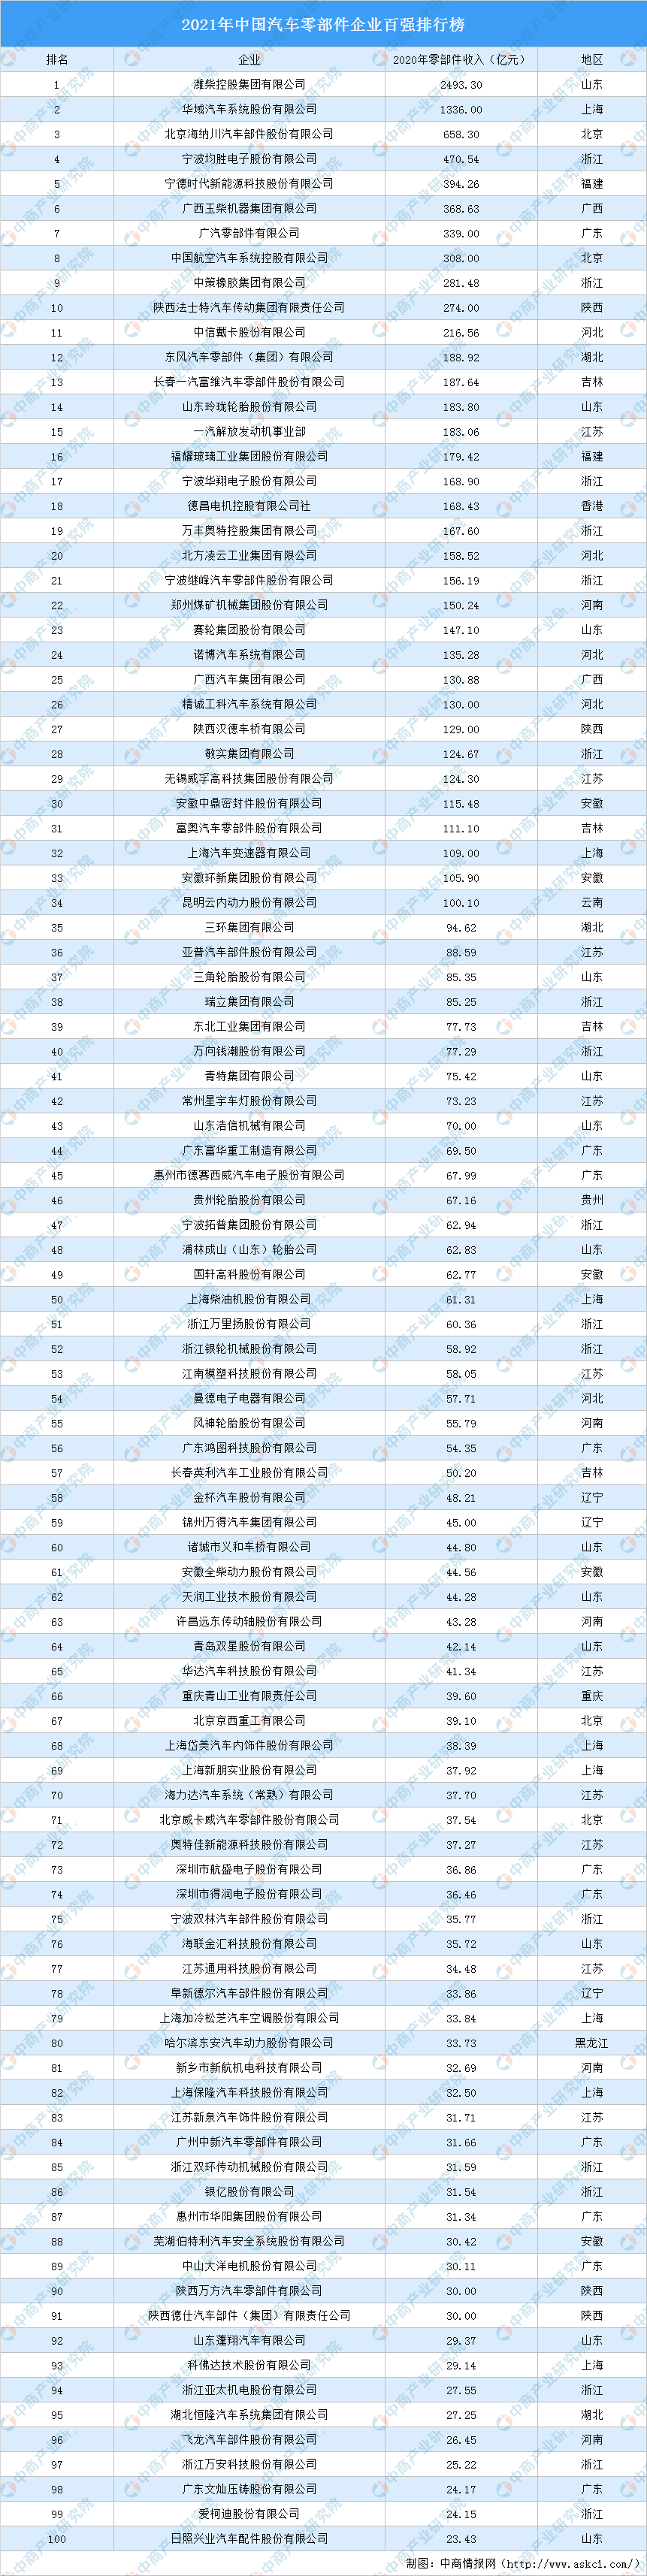 中国汽车企业排行榜_2021亚洲品牌500强排行榜(中国企业名单)